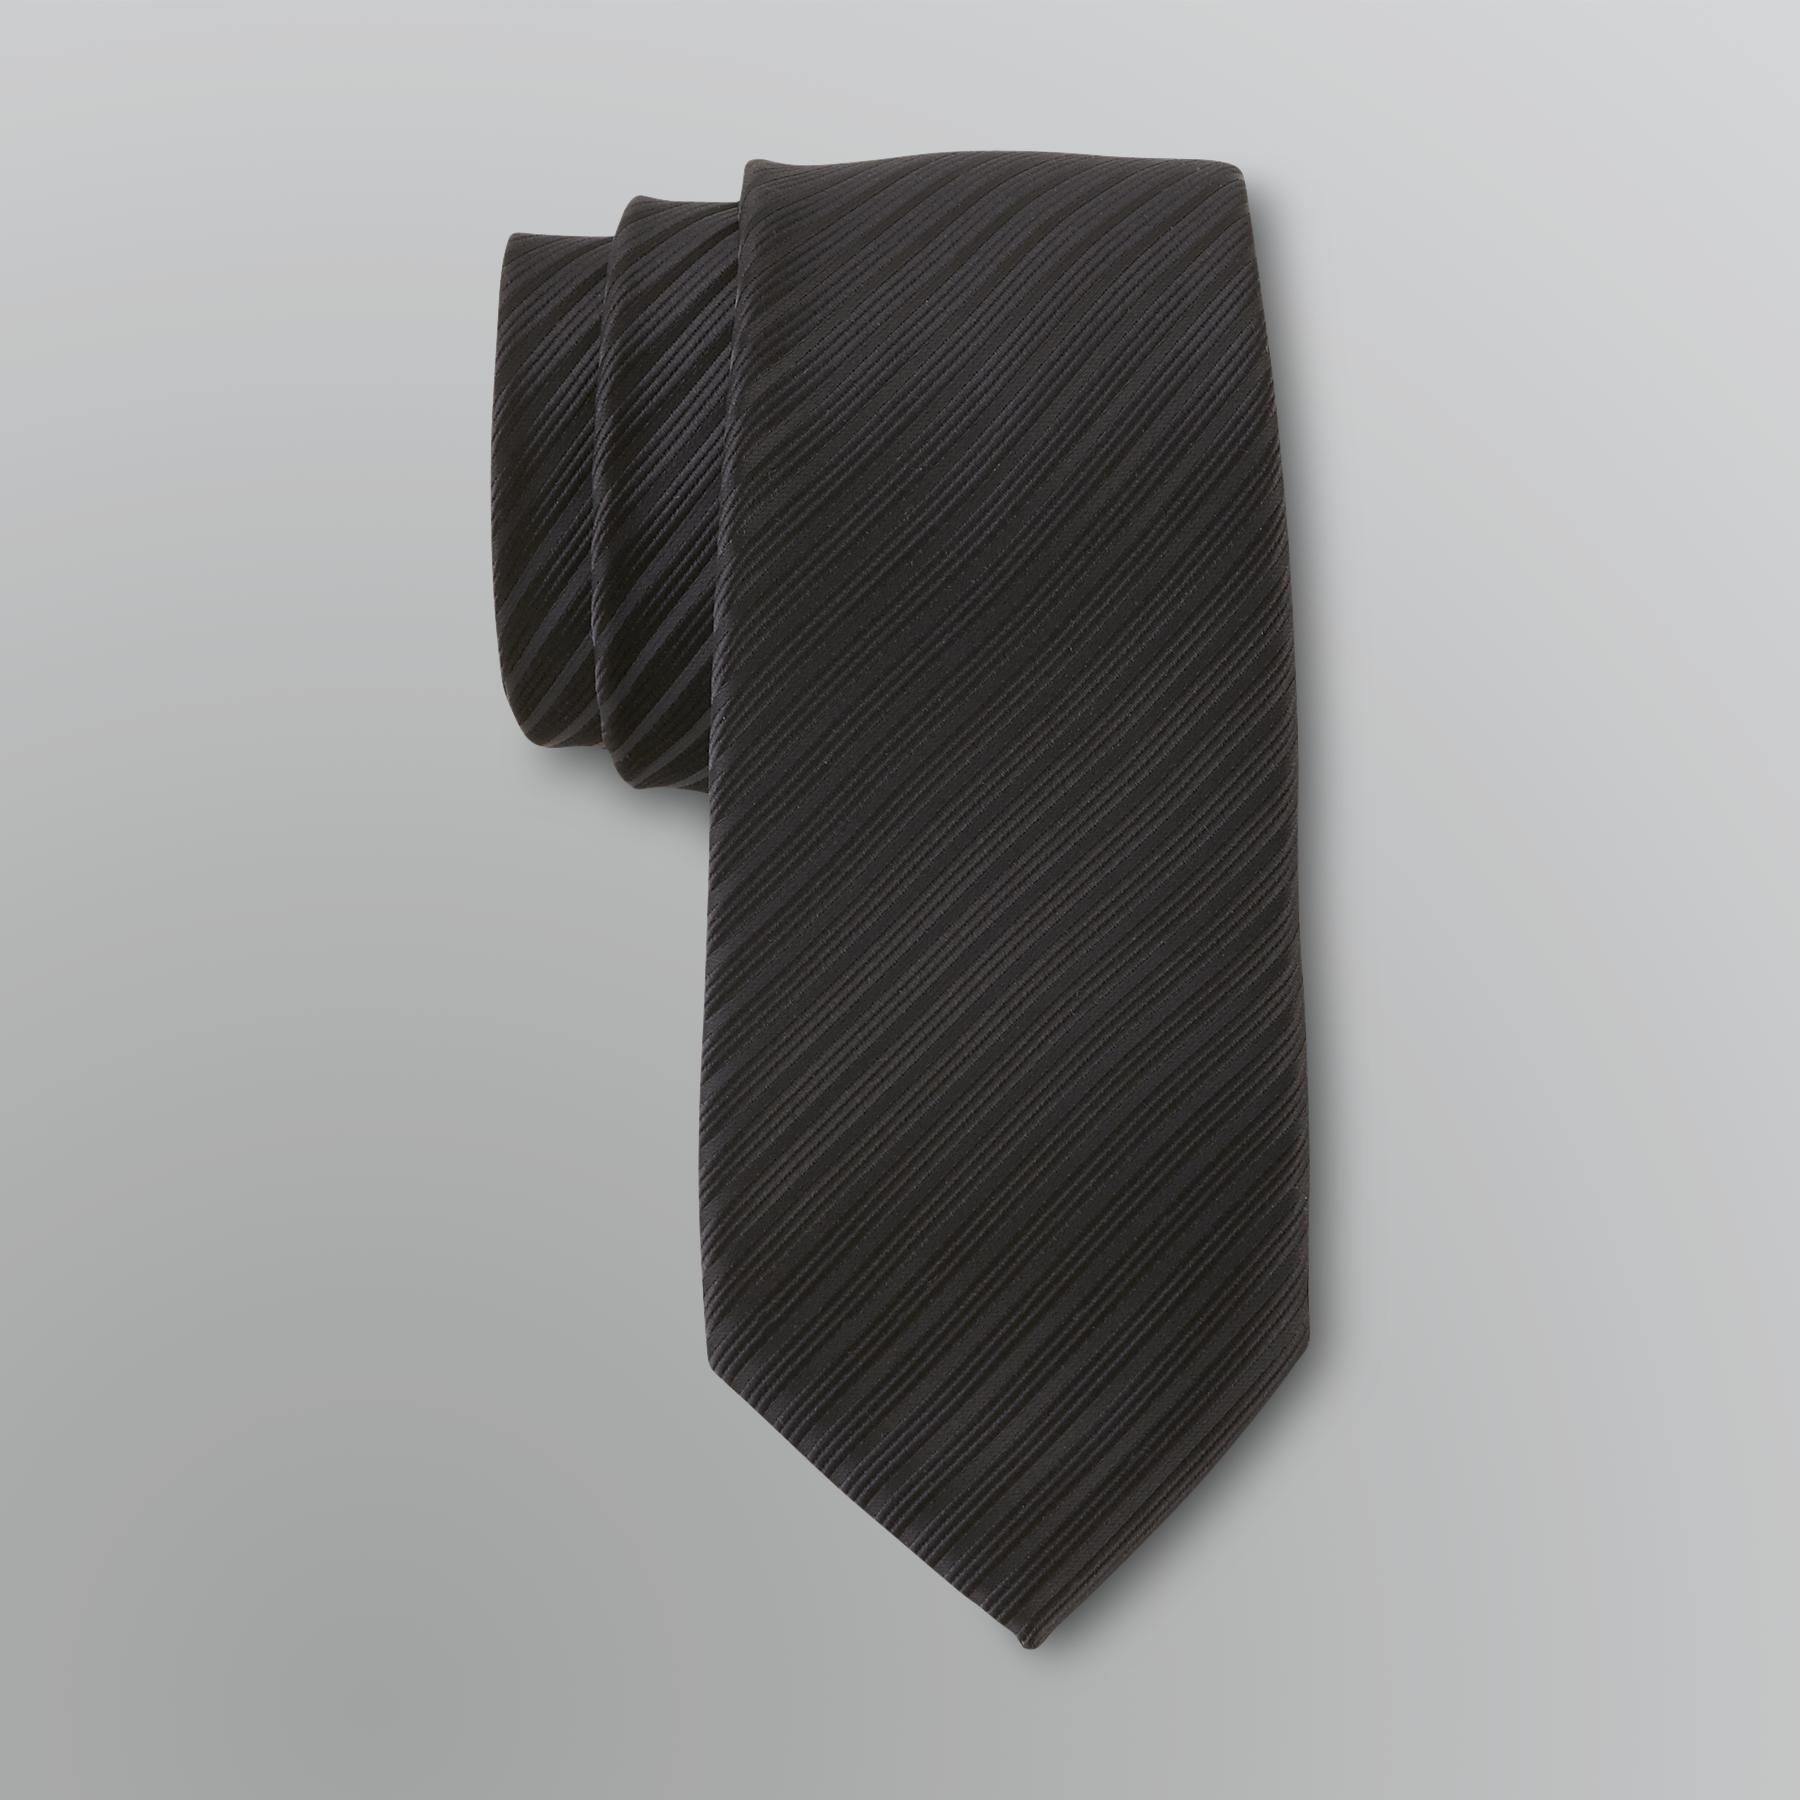 Dockers Men's Tonal Striped Necktie